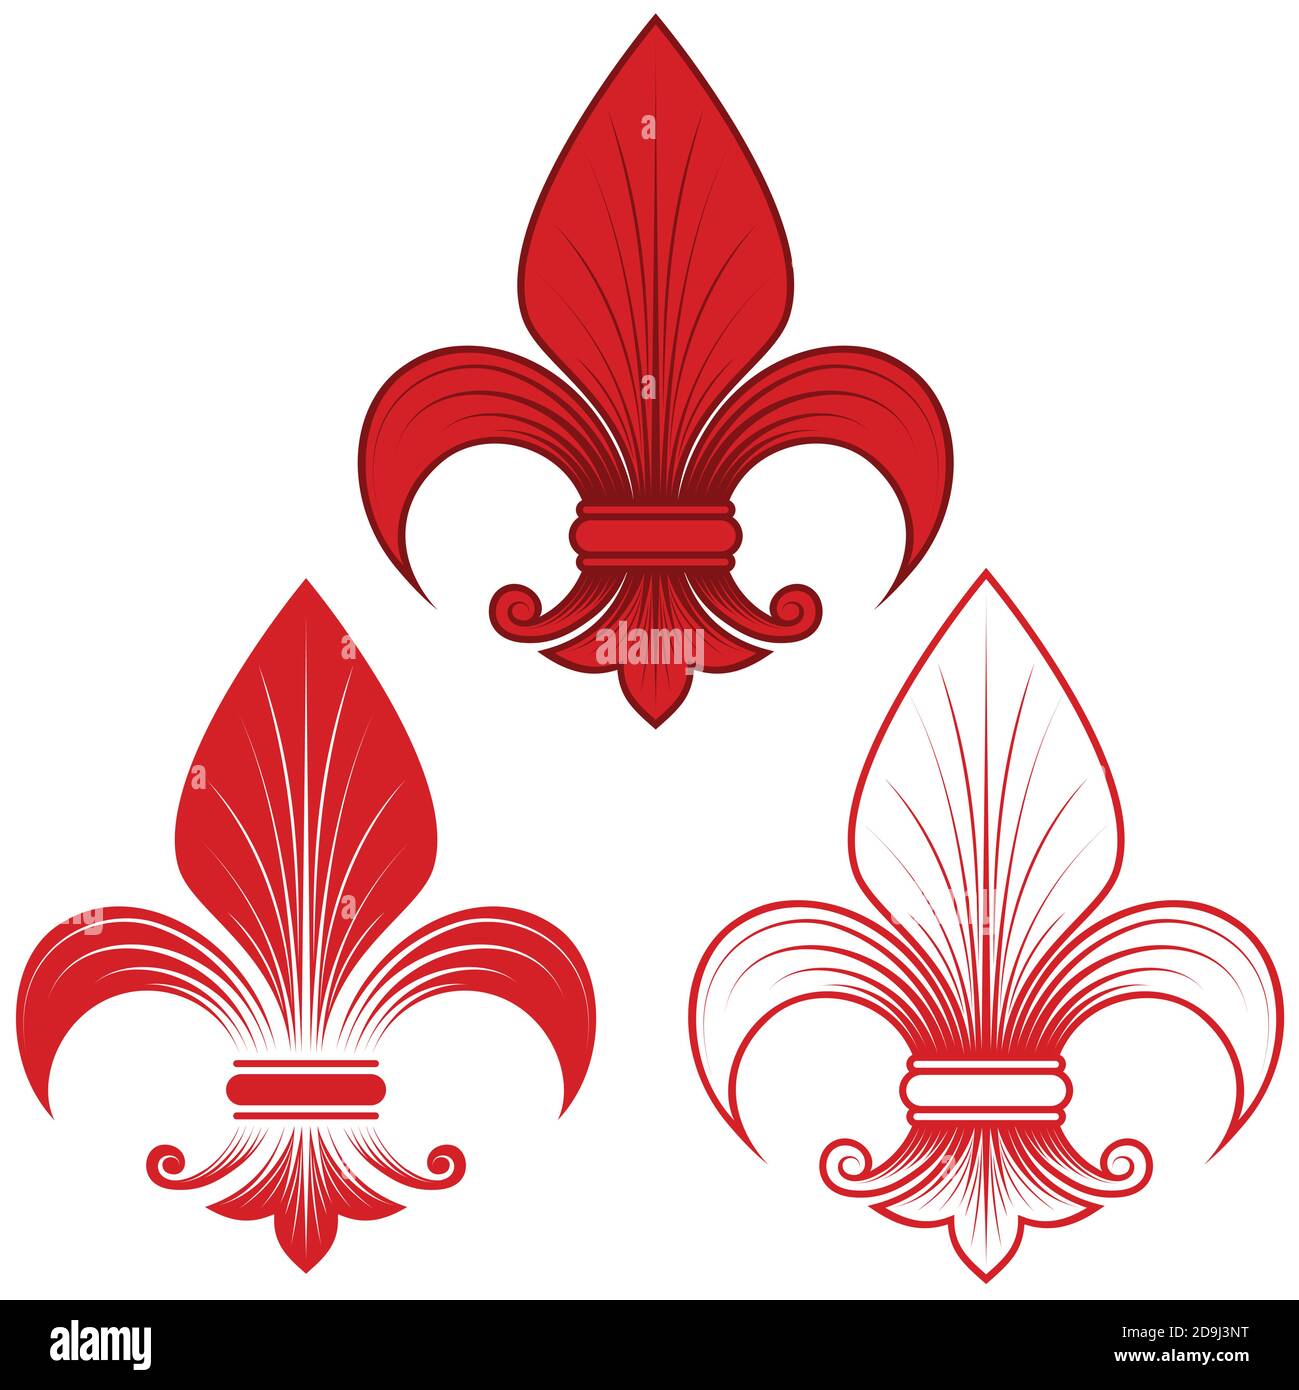 Dessin vectoriel de fleur de lis en trois styles graphiques en rouge, représentation de la fleur de nénuphars, symbole utilisé dans l'héraldique médiévale. Le tout sur fond blanc Illustration de Vecteur